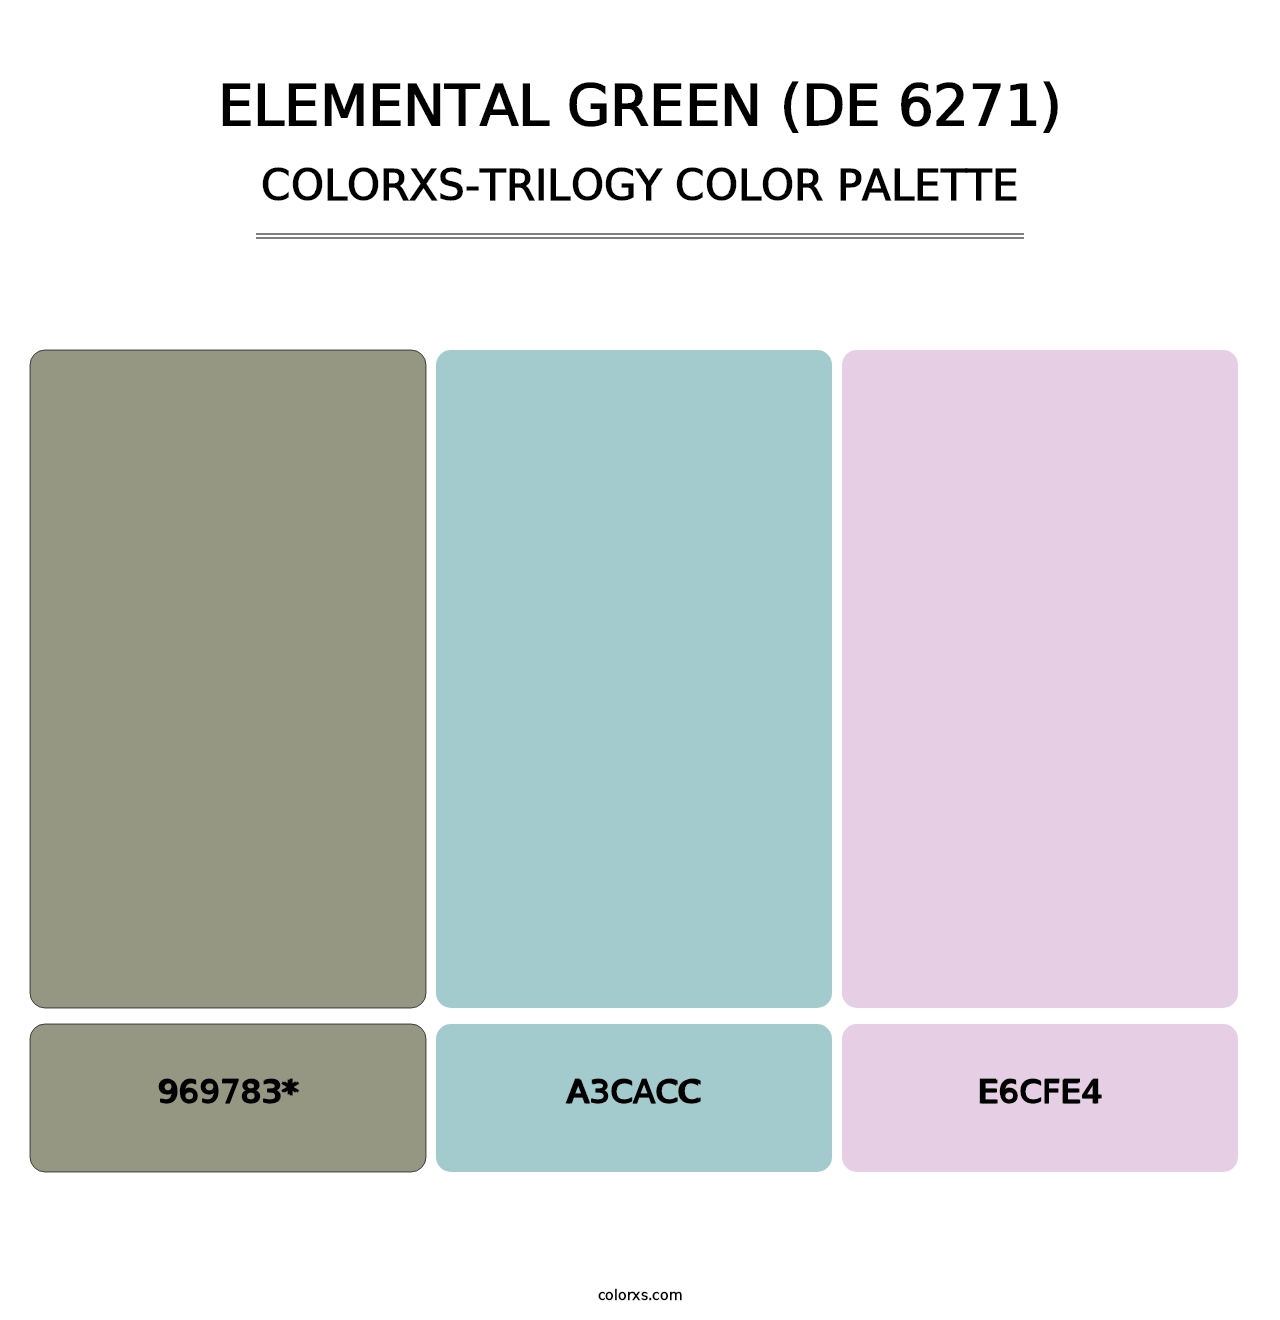 Elemental Green (DE 6271) - Colorxs Trilogy Palette